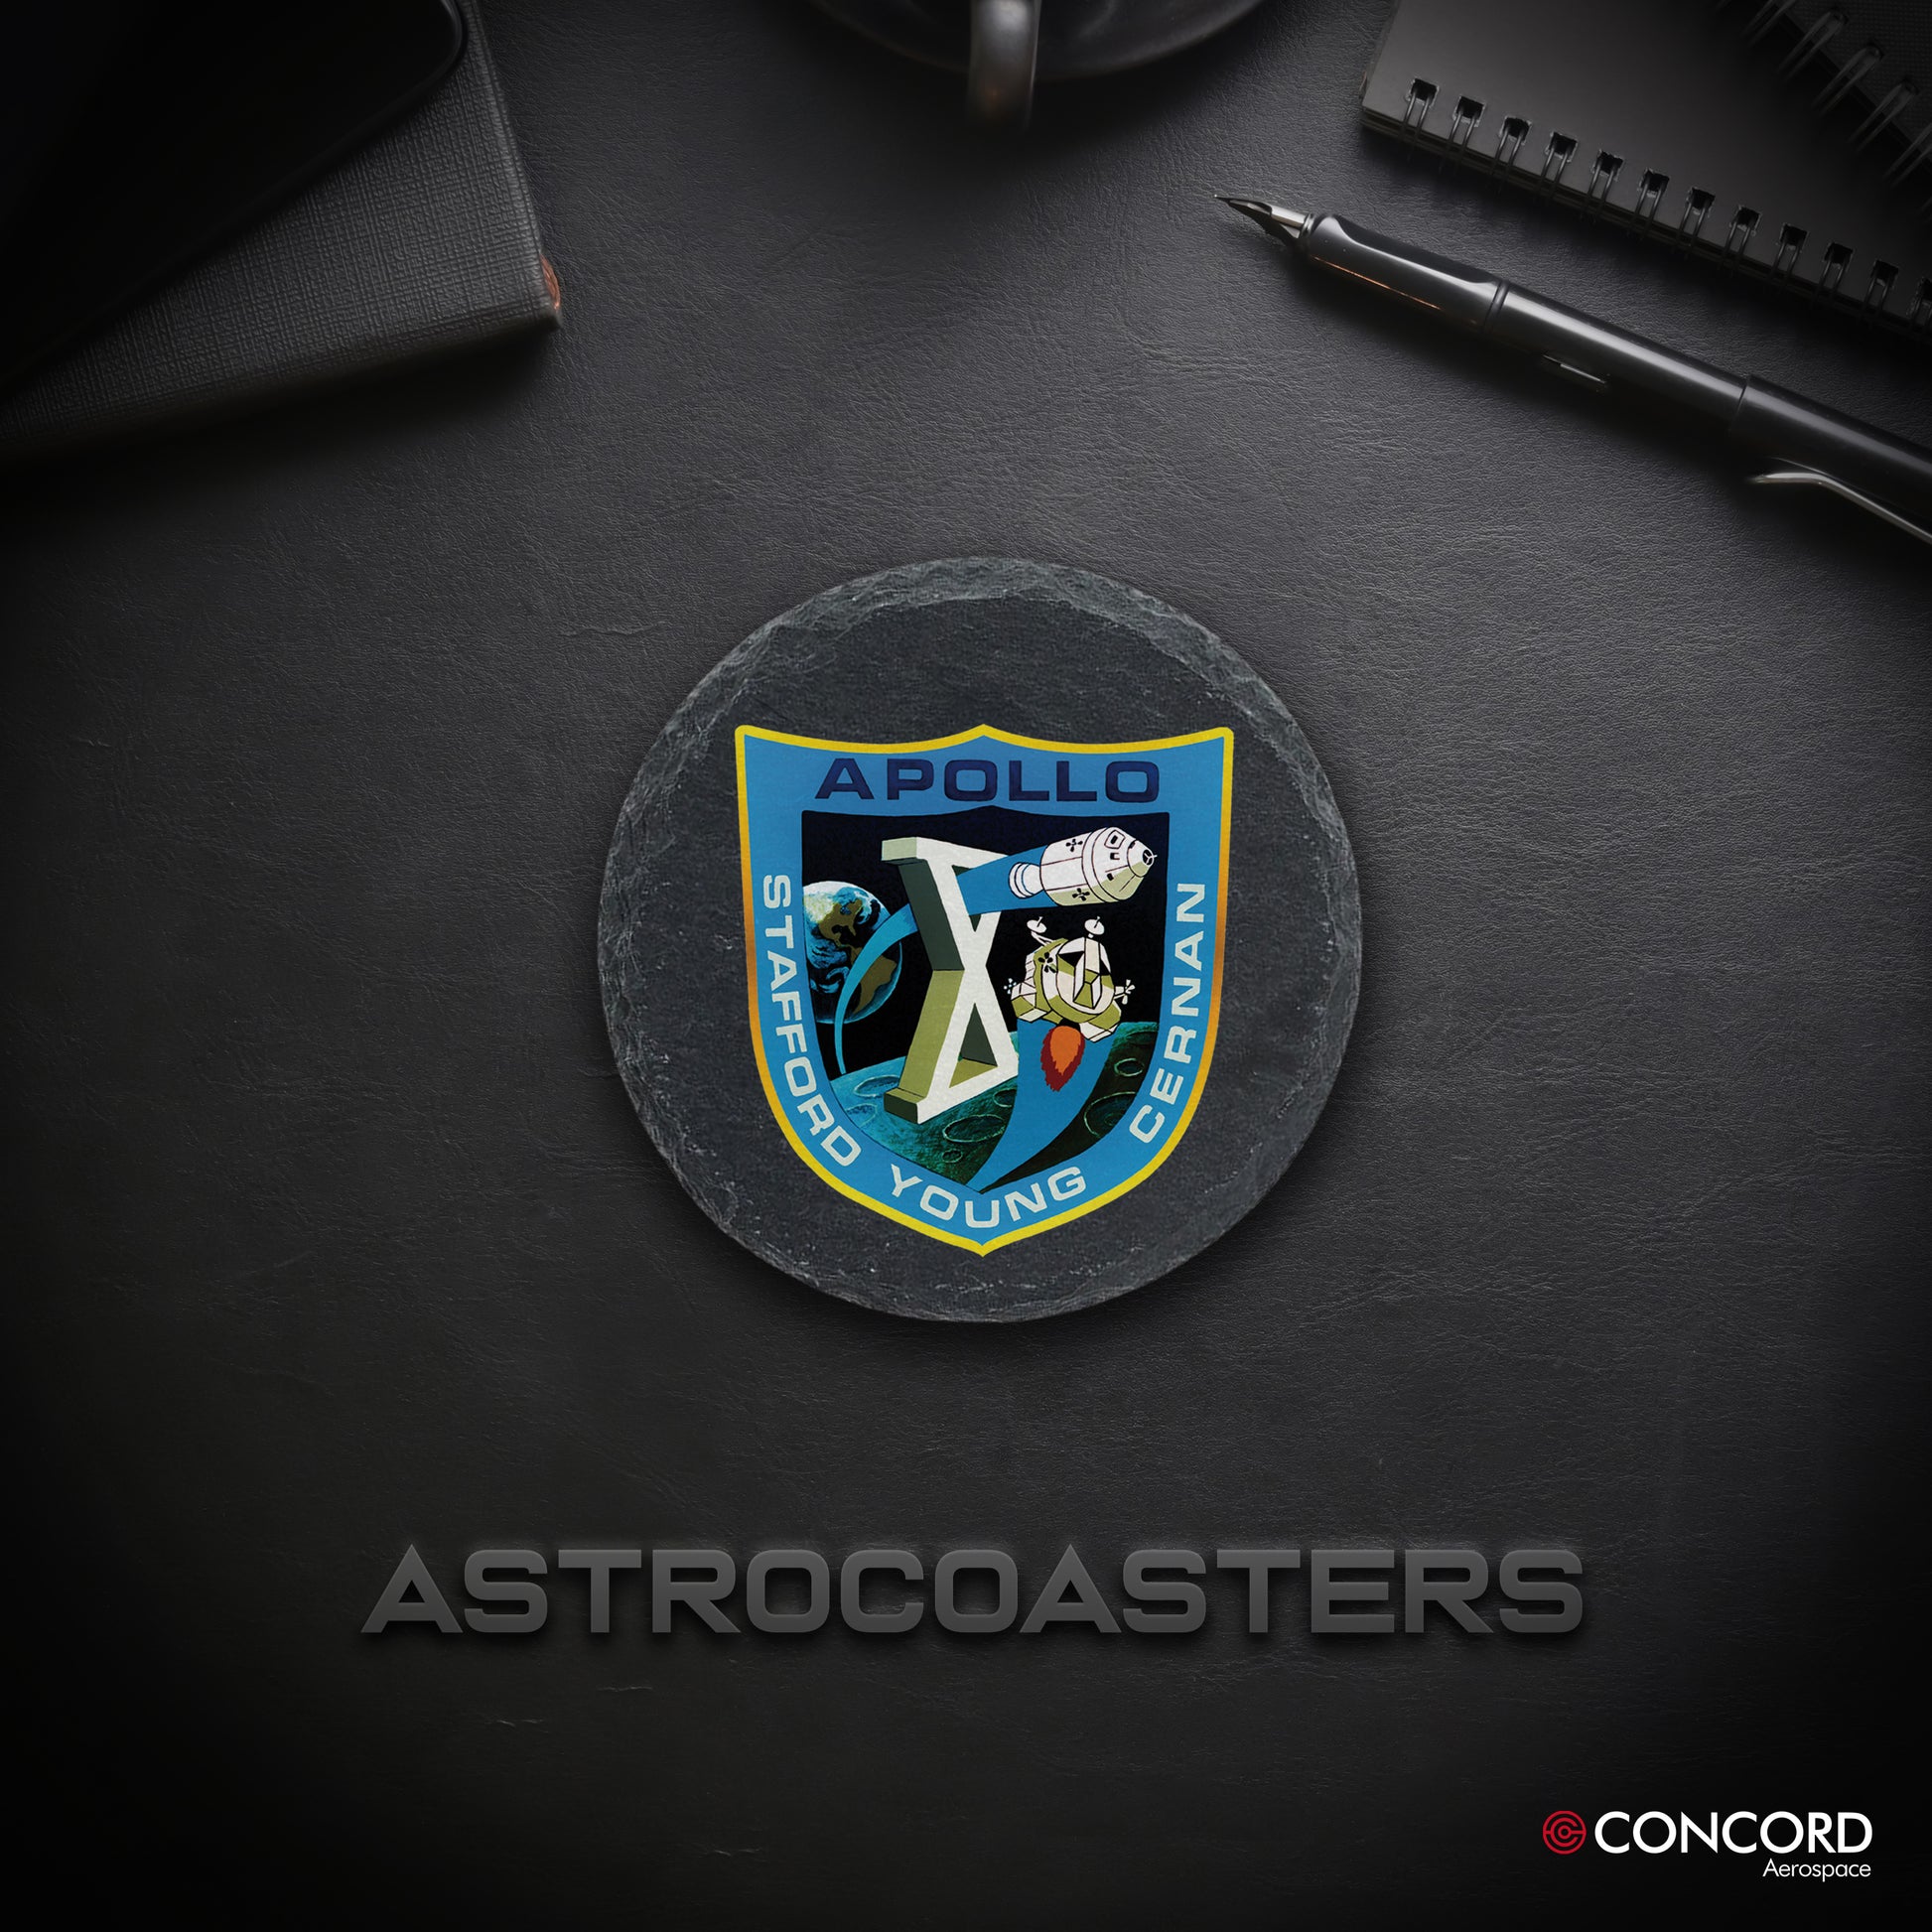 APOLLO 10 MISSION - SLATE COASTER - Concord Aerospace Concord Aerospace Concord Aerospace Coasters